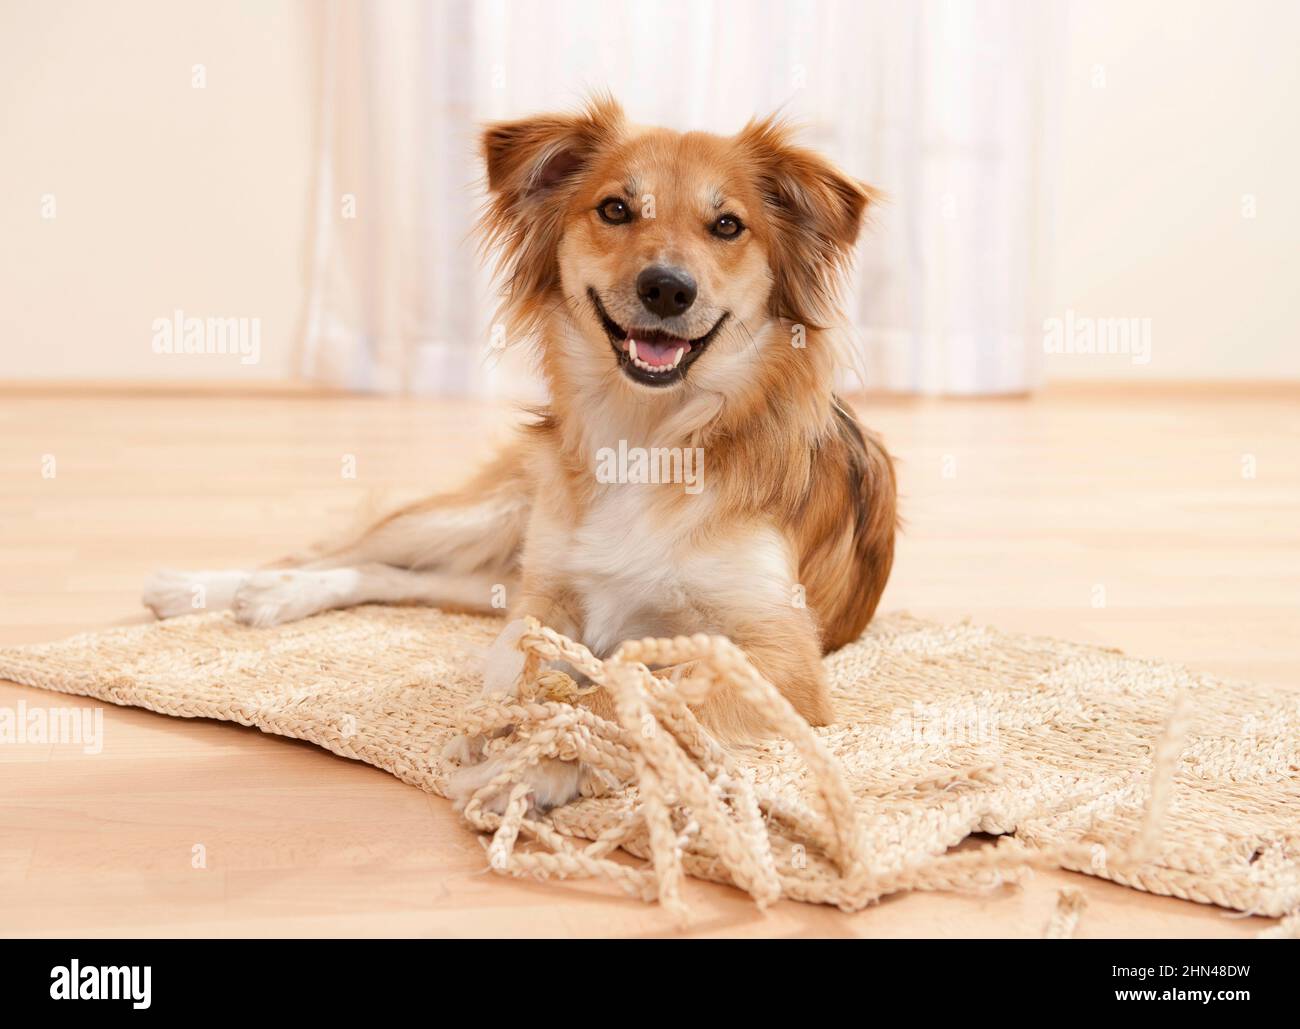 Un mongrel ha roto una alfombra y está muy orgulloso de ella. Alemania Foto de stock